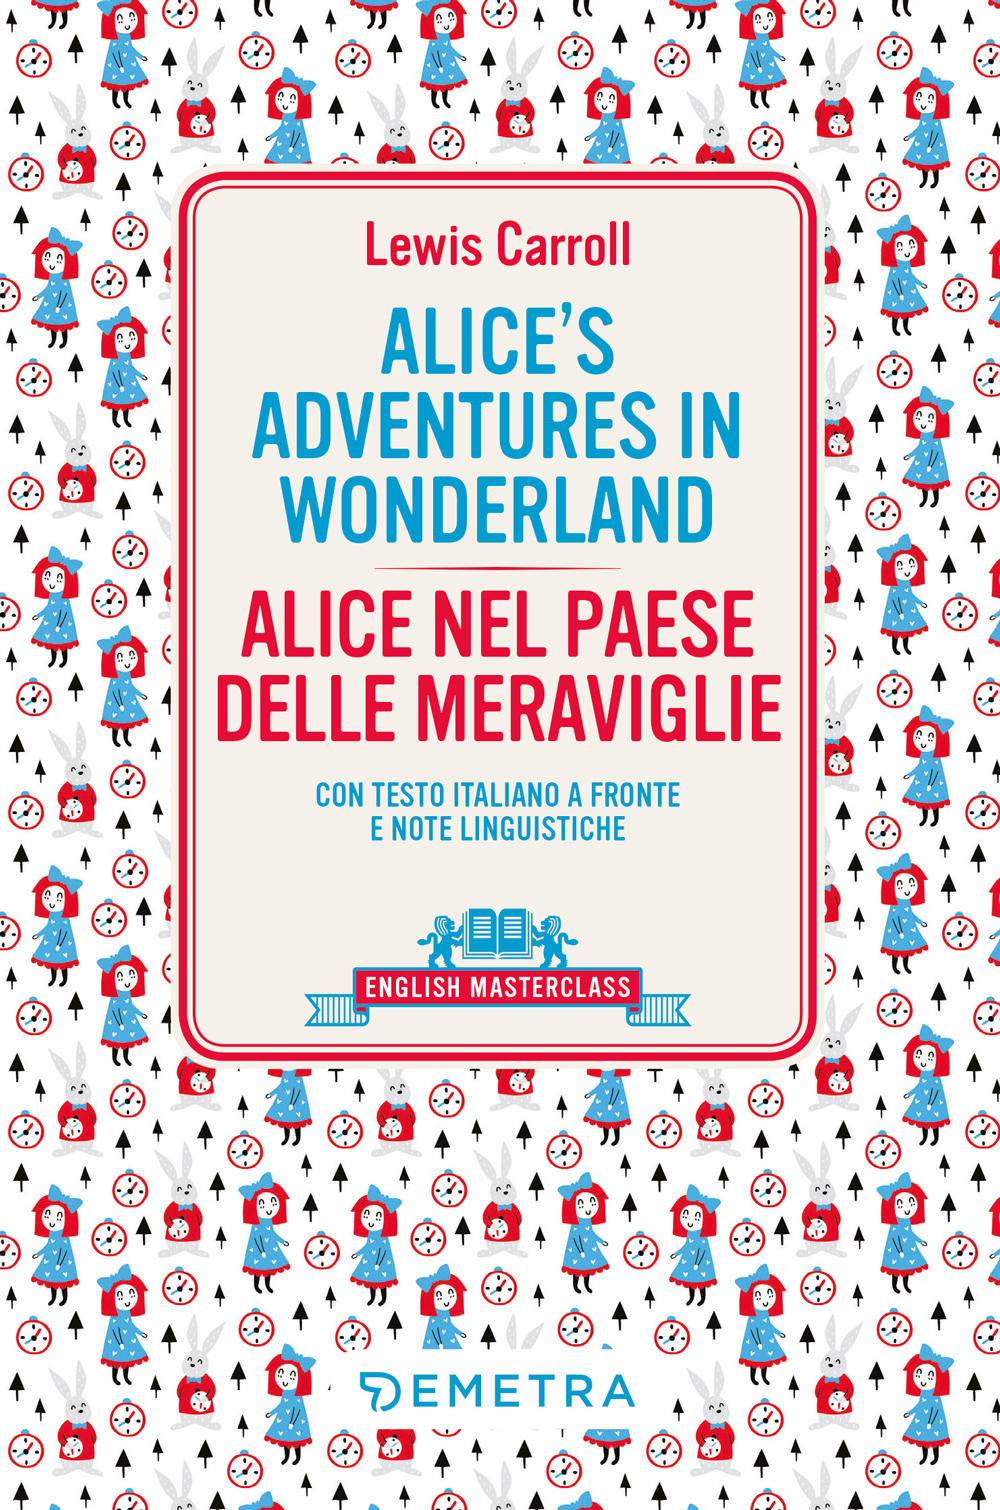 Alice's Adventures in Wonderland::con testo italiano a fronte e note linguistiche